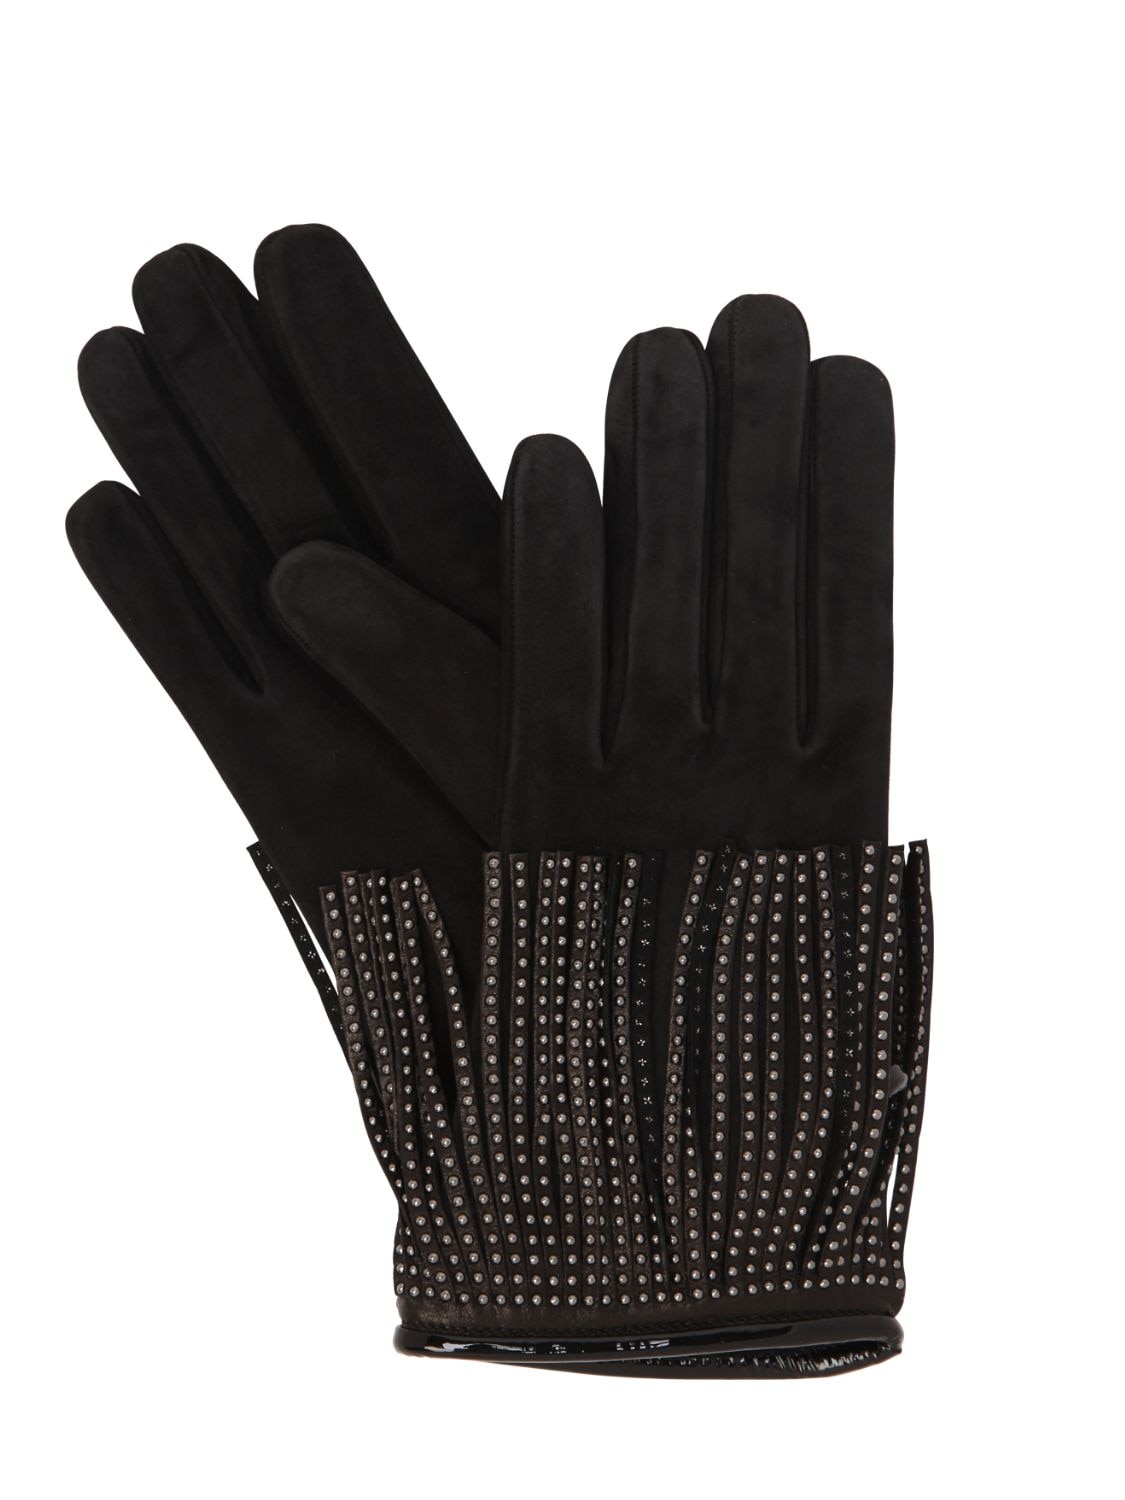 Mario Portolano Suede & Cashmere Gloves W/ Studs In Black